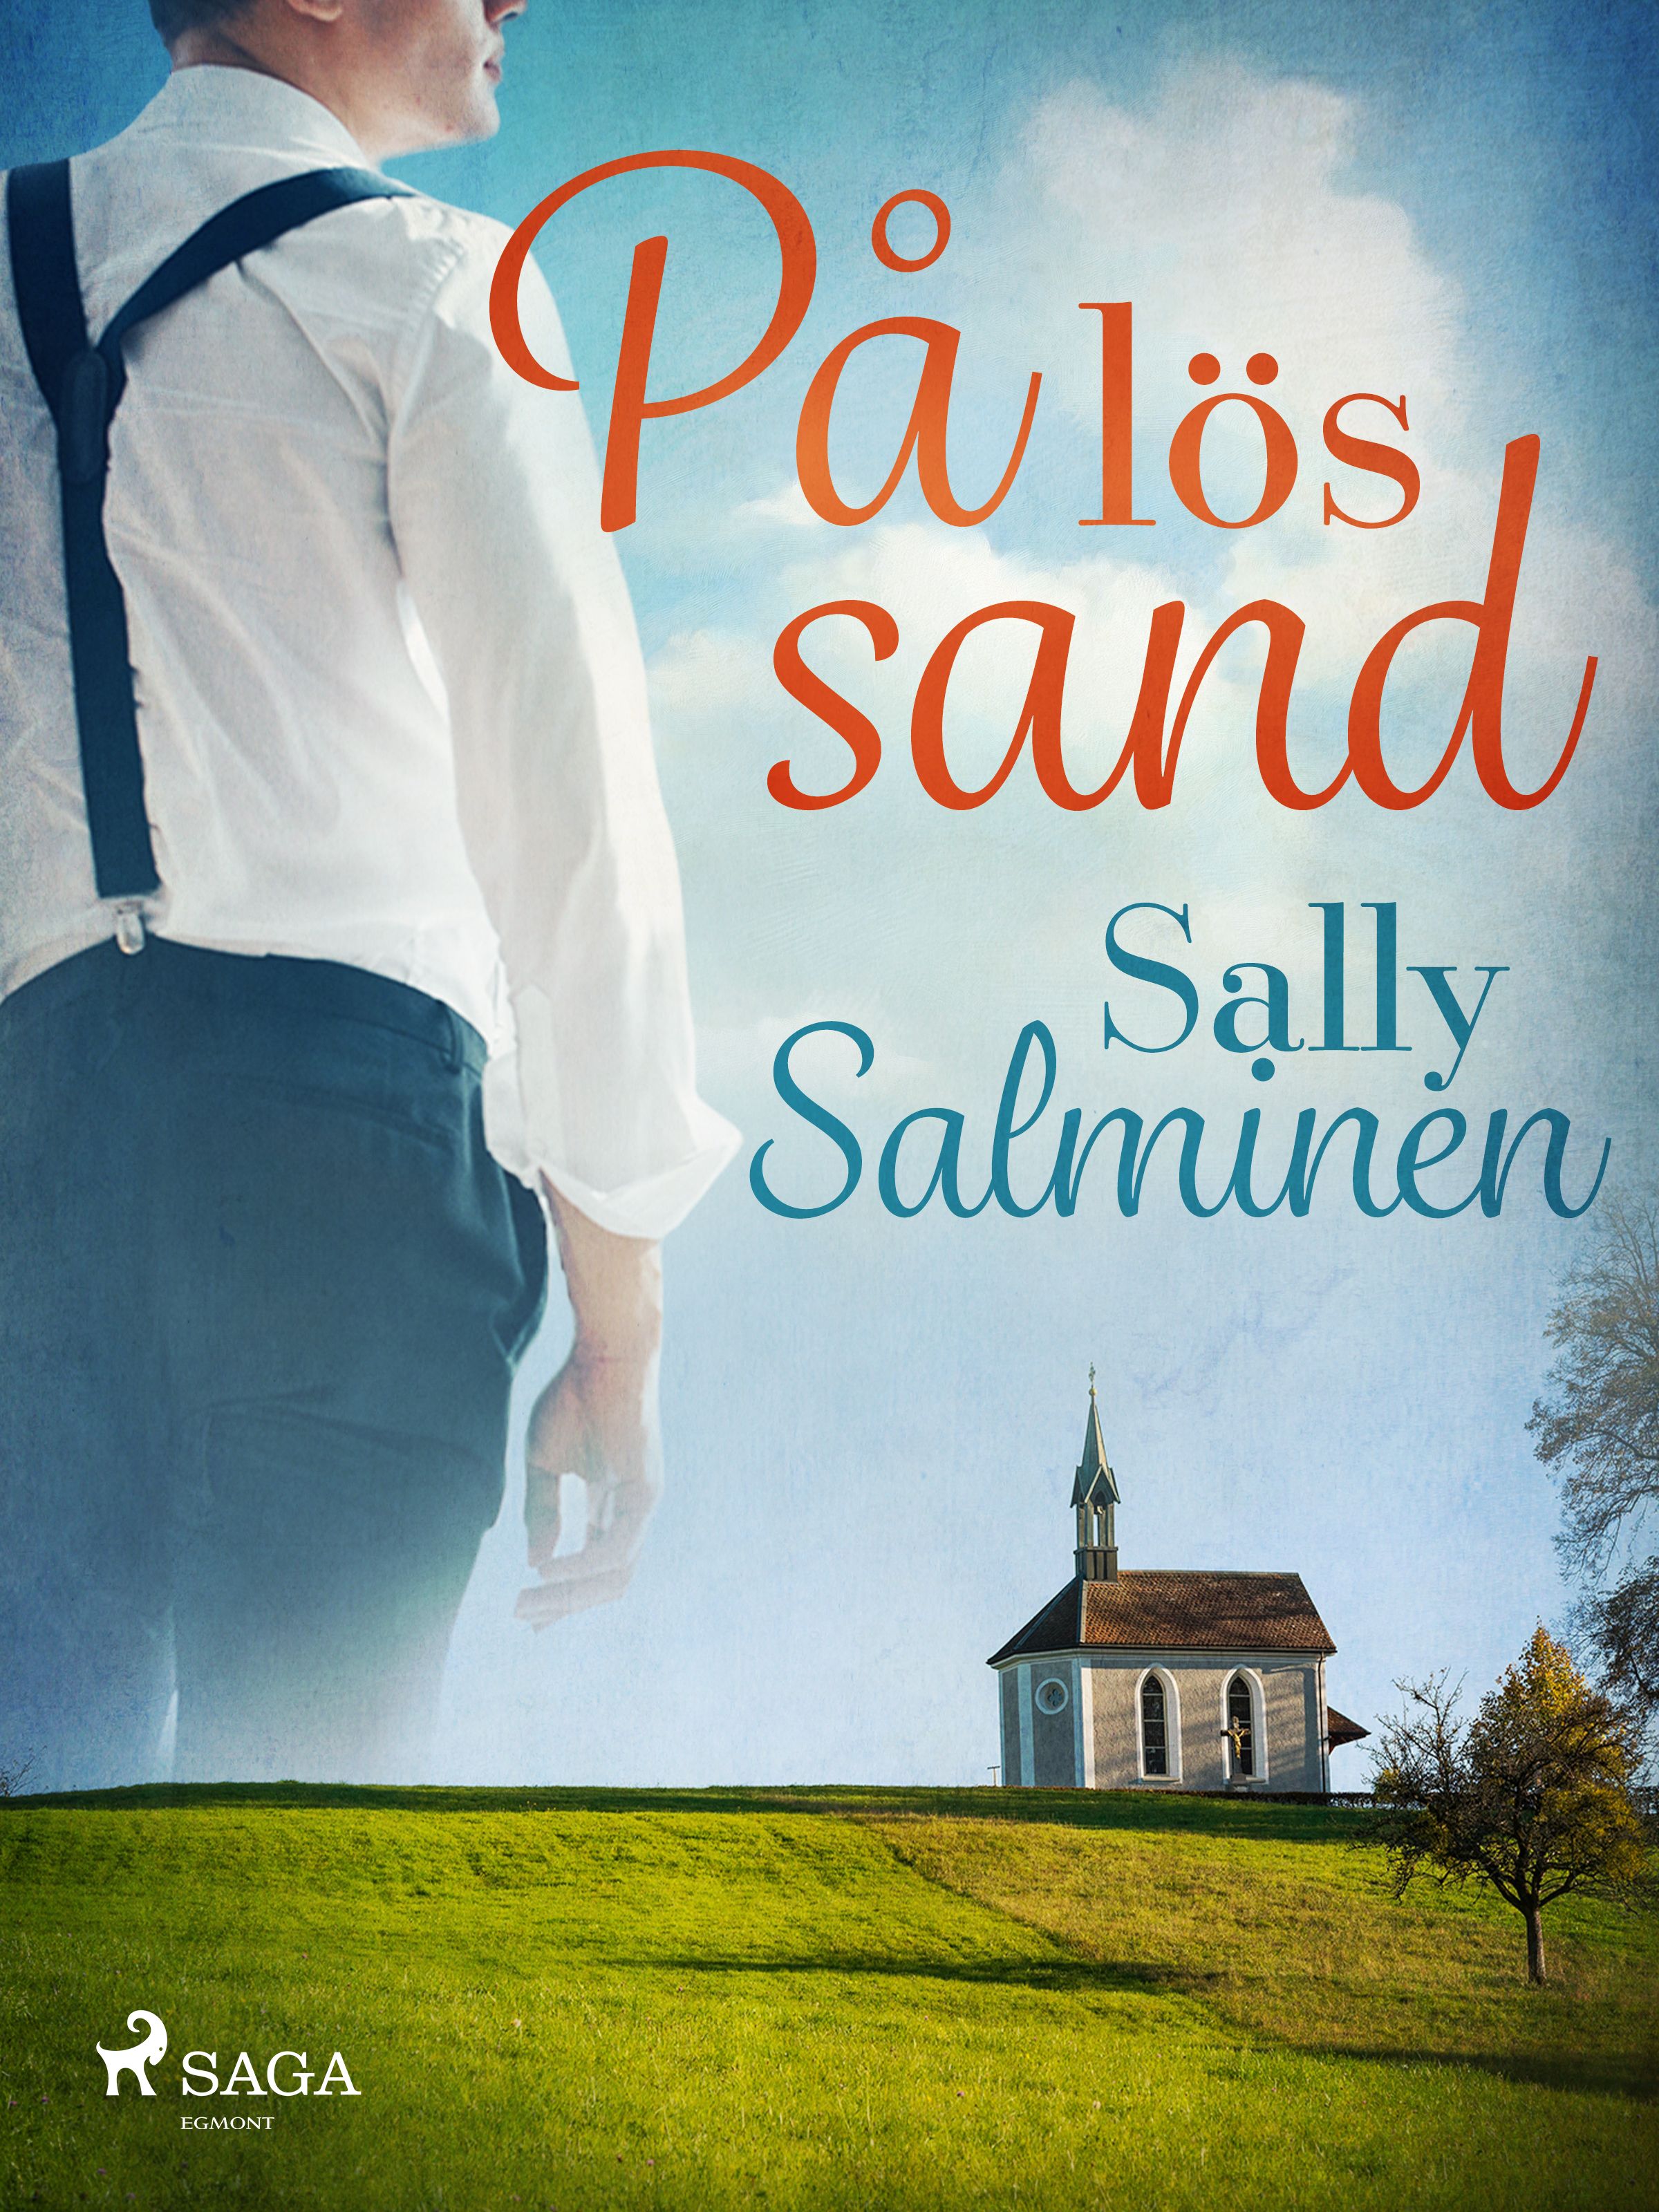 På lös sand, e-bok av Sally Salminen